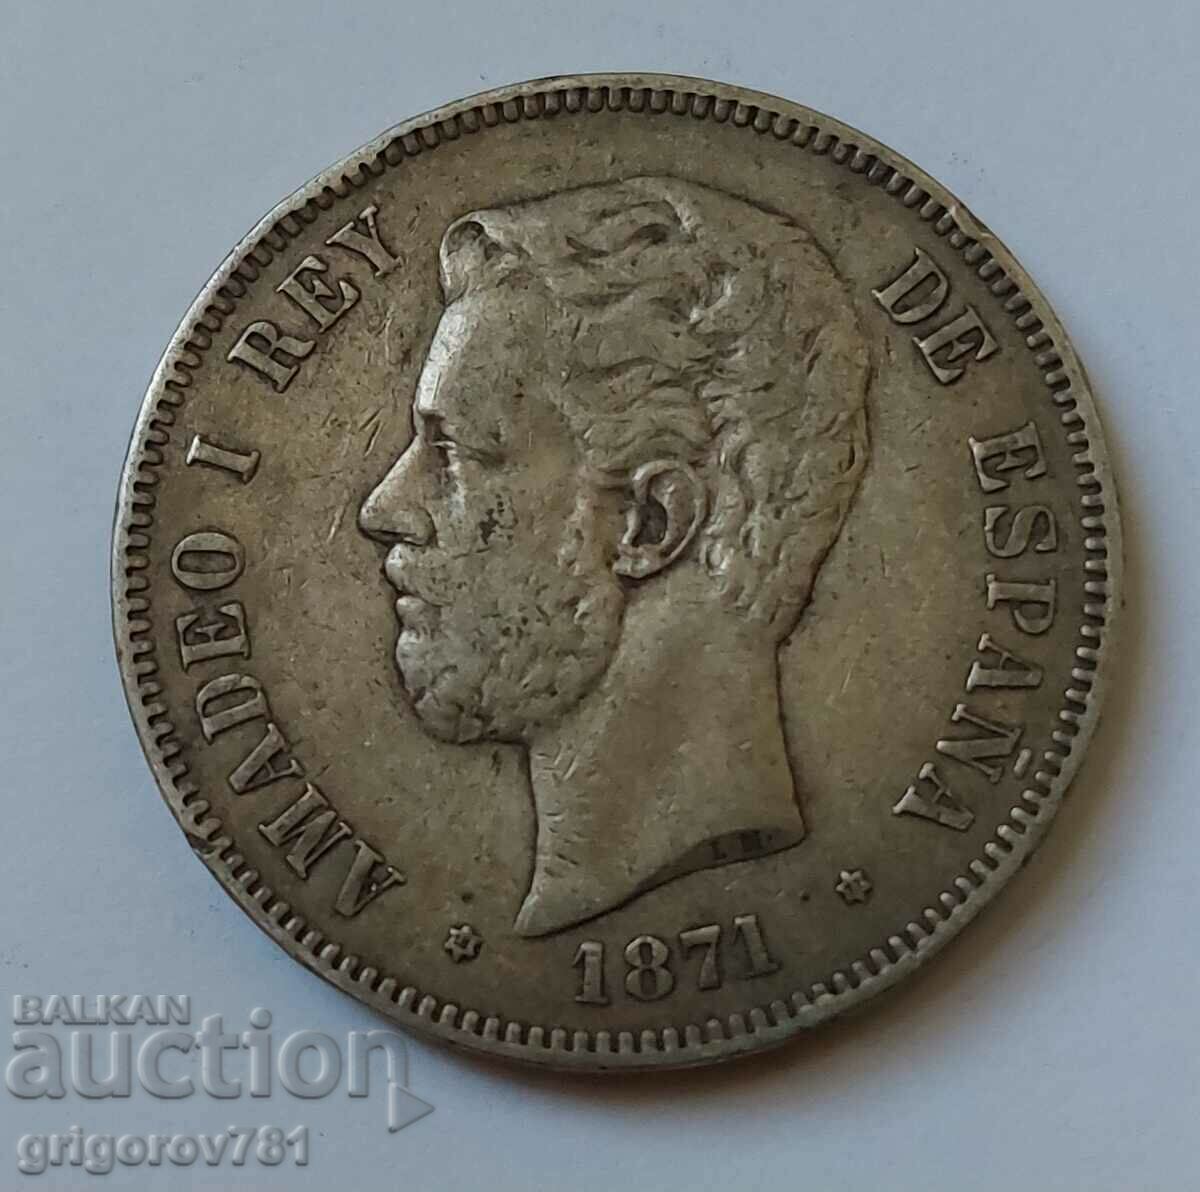 5 Pesetas Silver Spain 1871 - Silver Coin #9